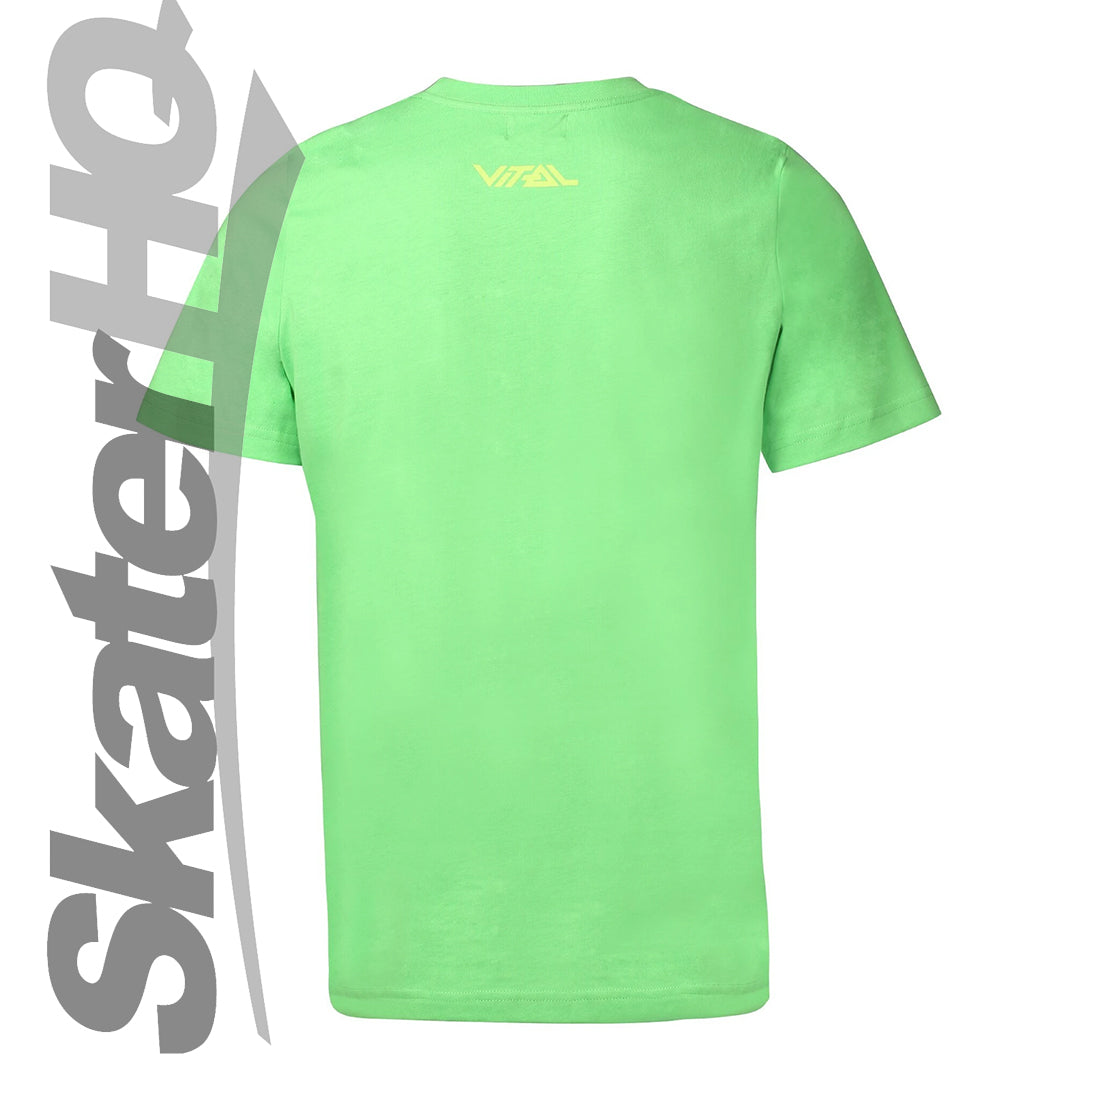 Vital Bomb T-Shirt - Green - Small Apparel Tshirts